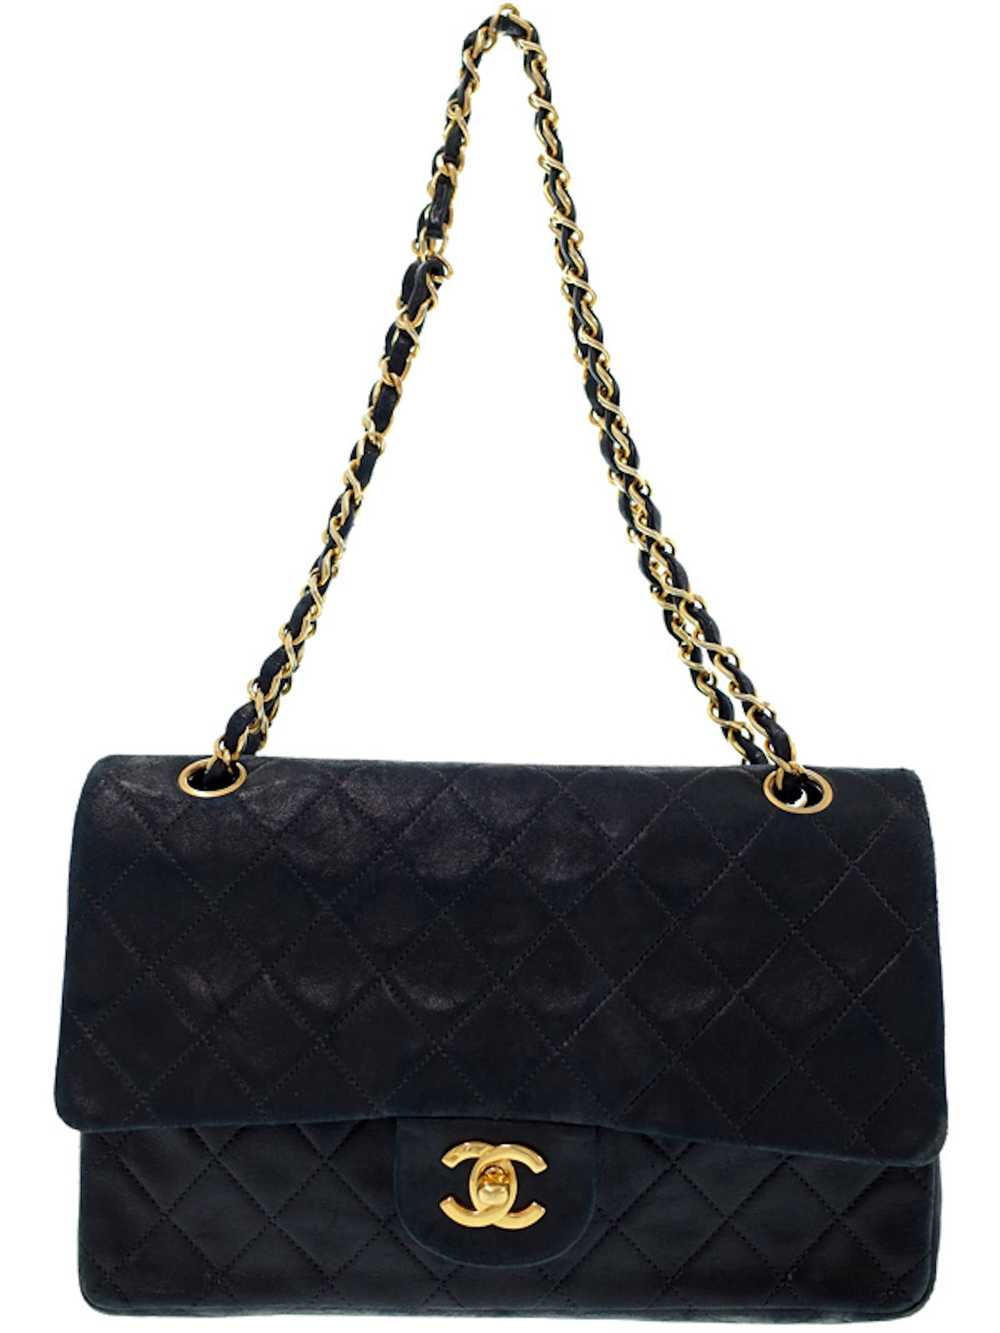 Chanel Chanel Matelasse Chain Shoulder Bag Black - image 1